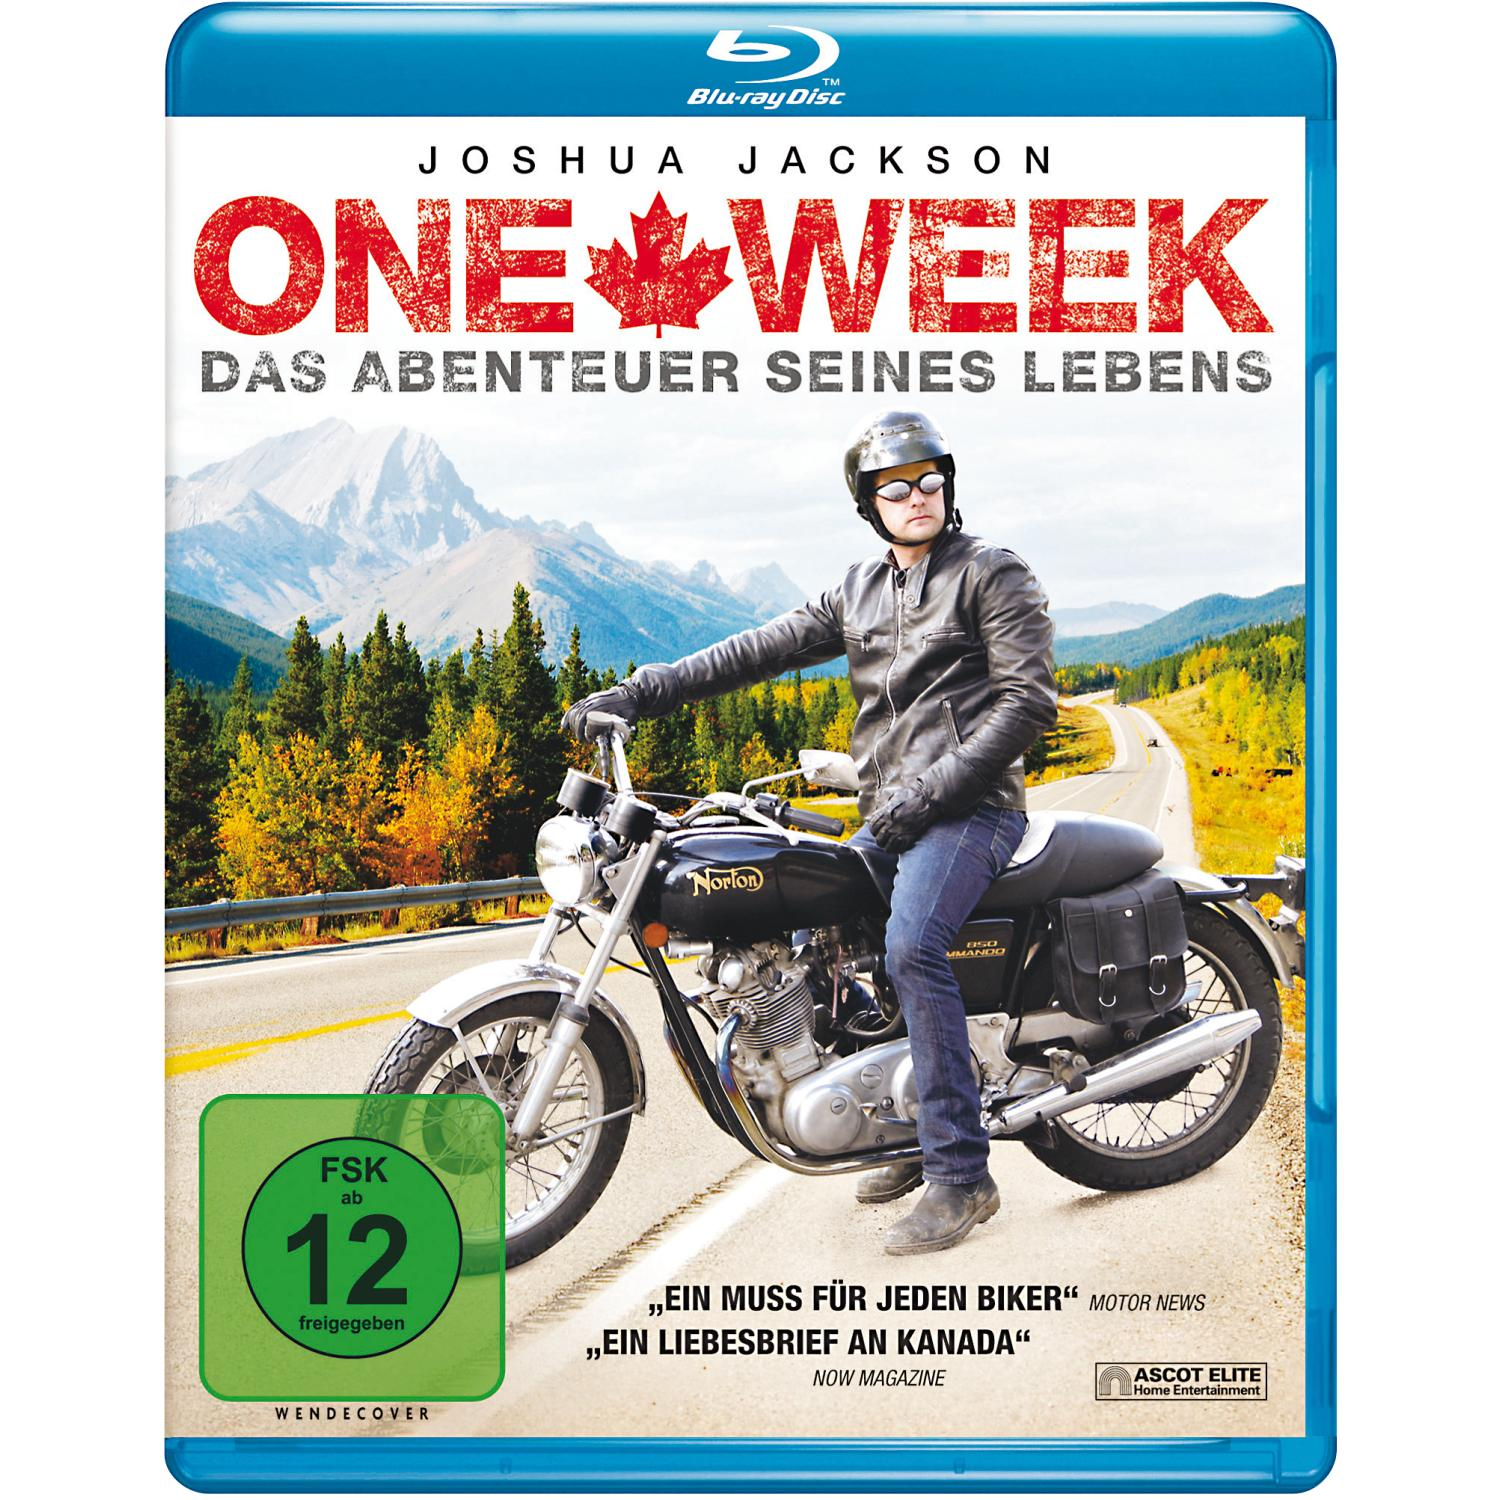 SEINES ABENTEUER Blu-ray ONE - LEBENS DAS WEEK